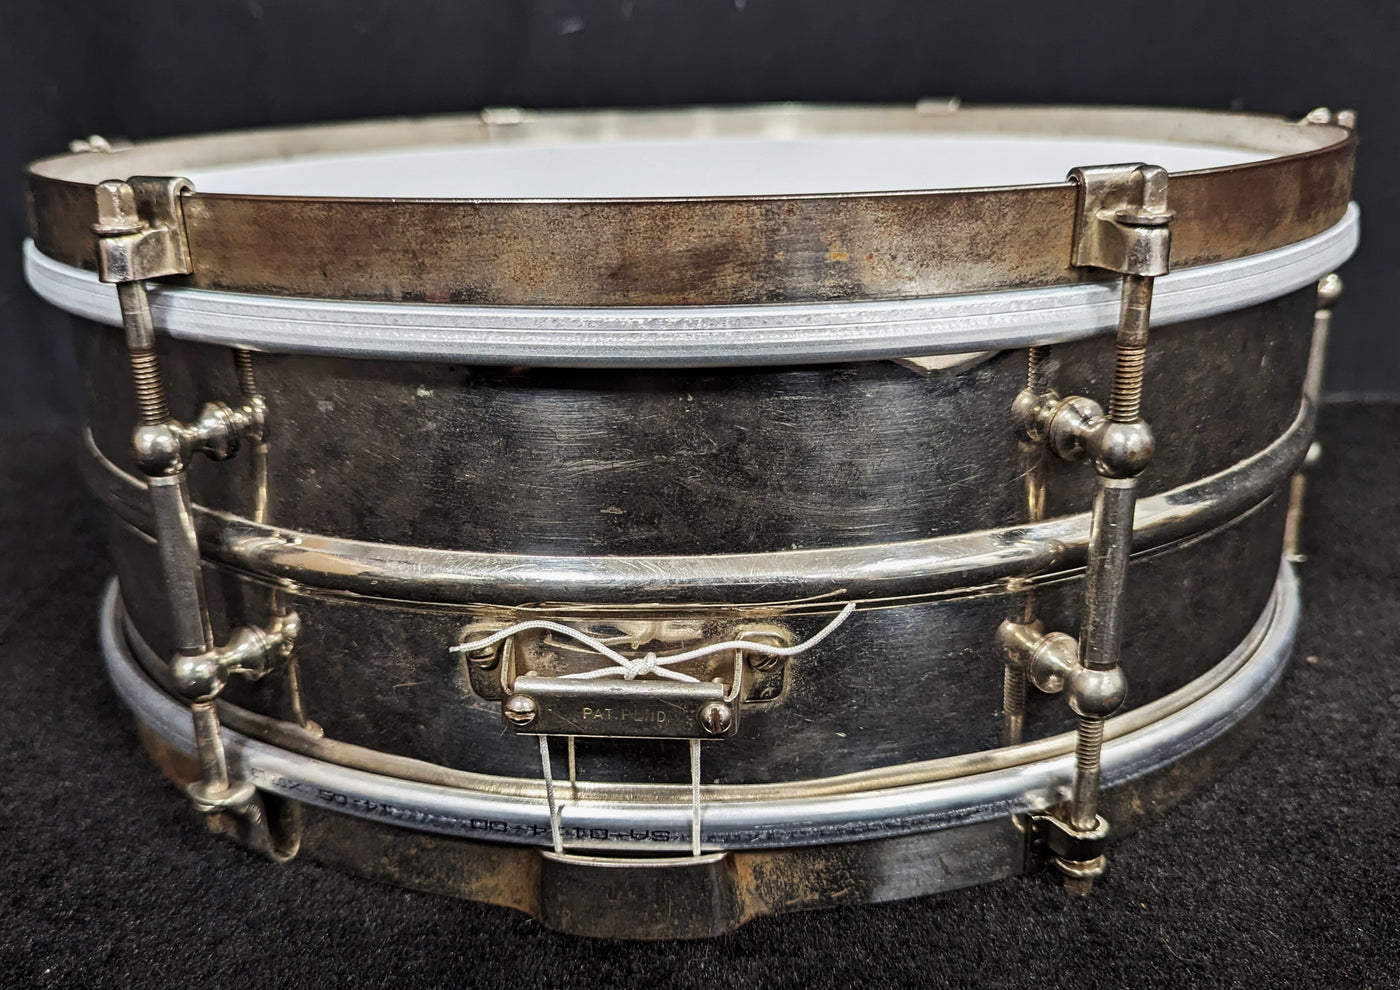 Nickel over Brass Vintage Snare